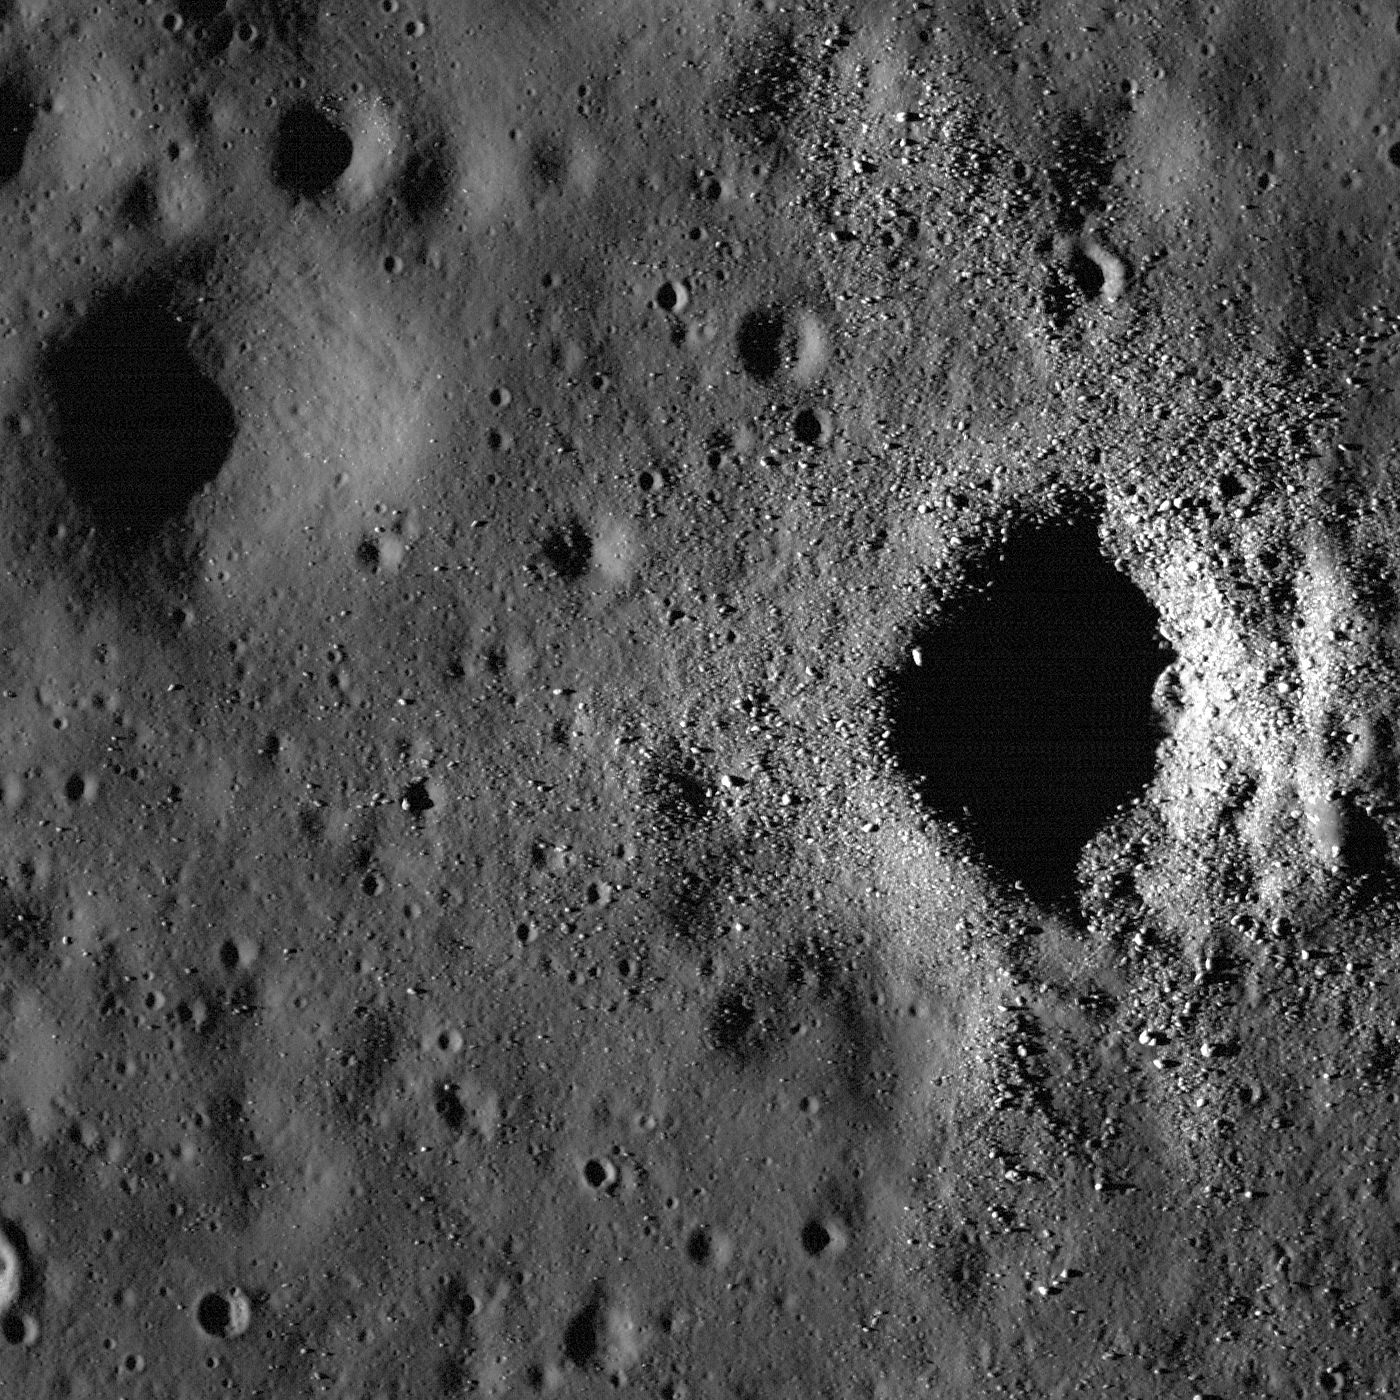 Fresh crater on Oceanus Procellarum